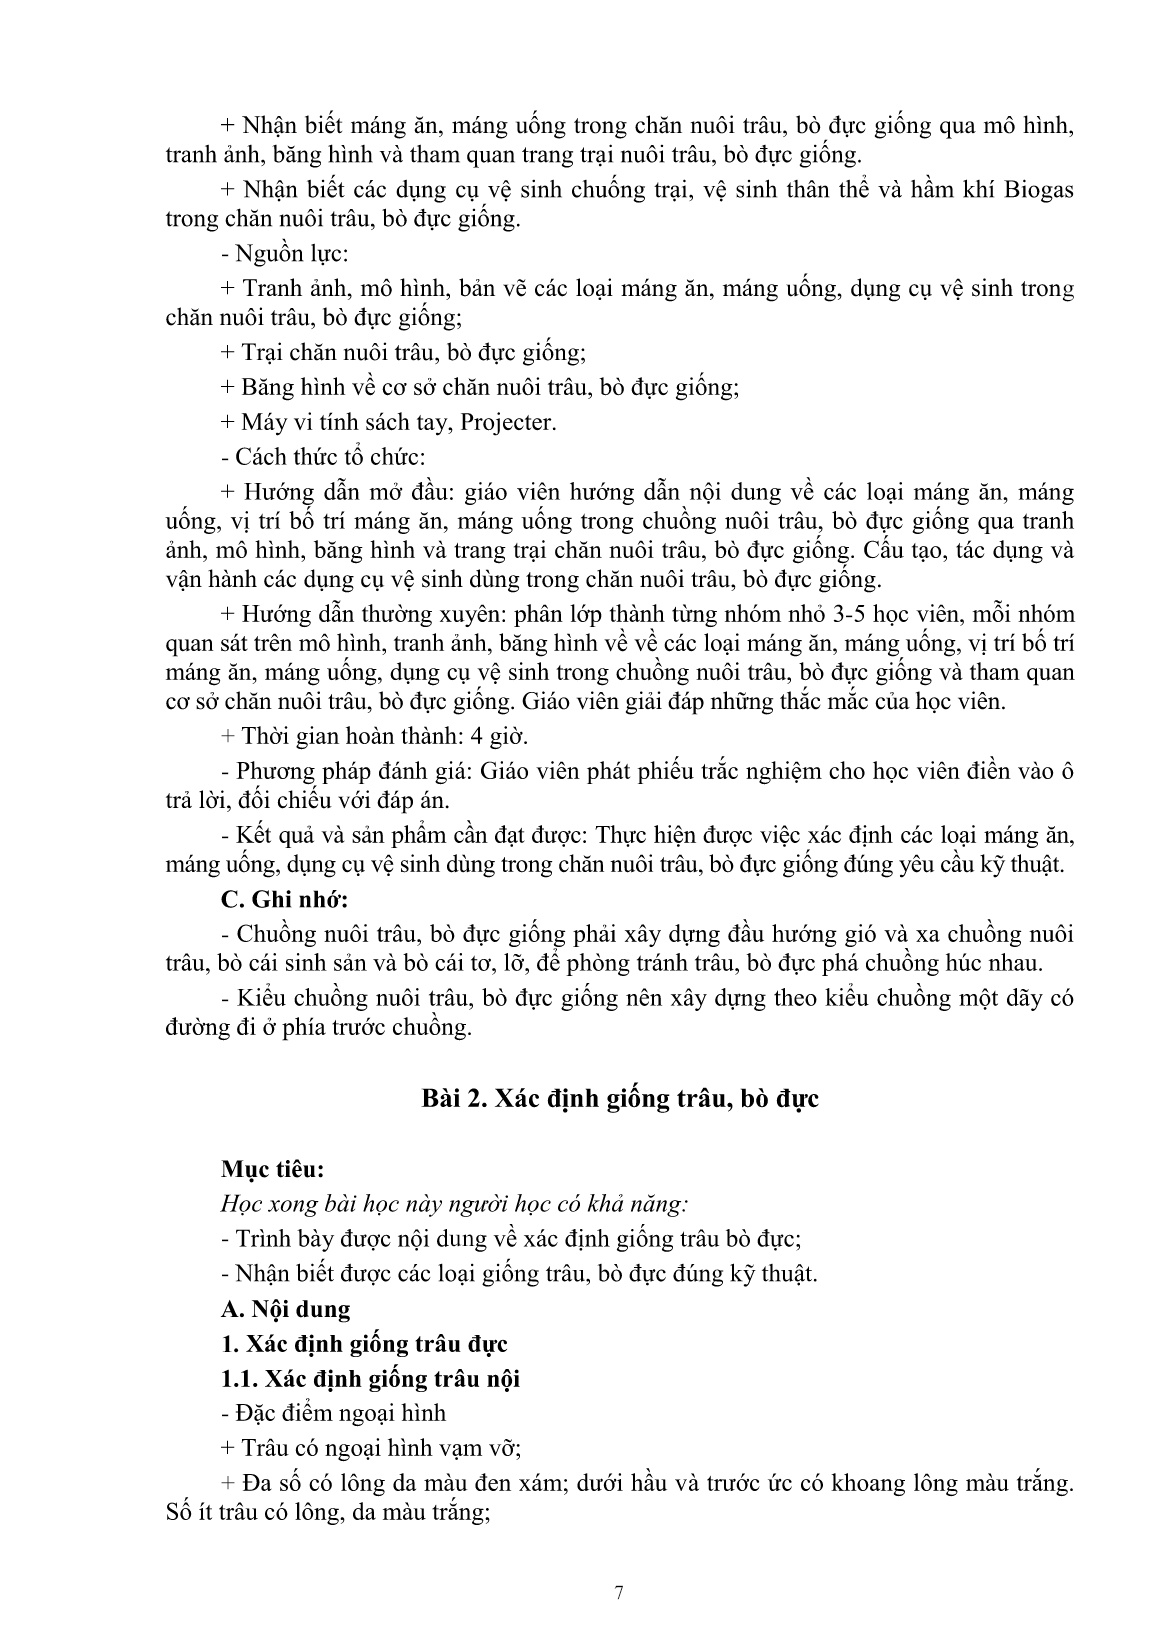 Giáo trình mô đun Nuôi trâu, bò đực giống (Trình độ: Đào tạo dưới 3 tháng) trang 9